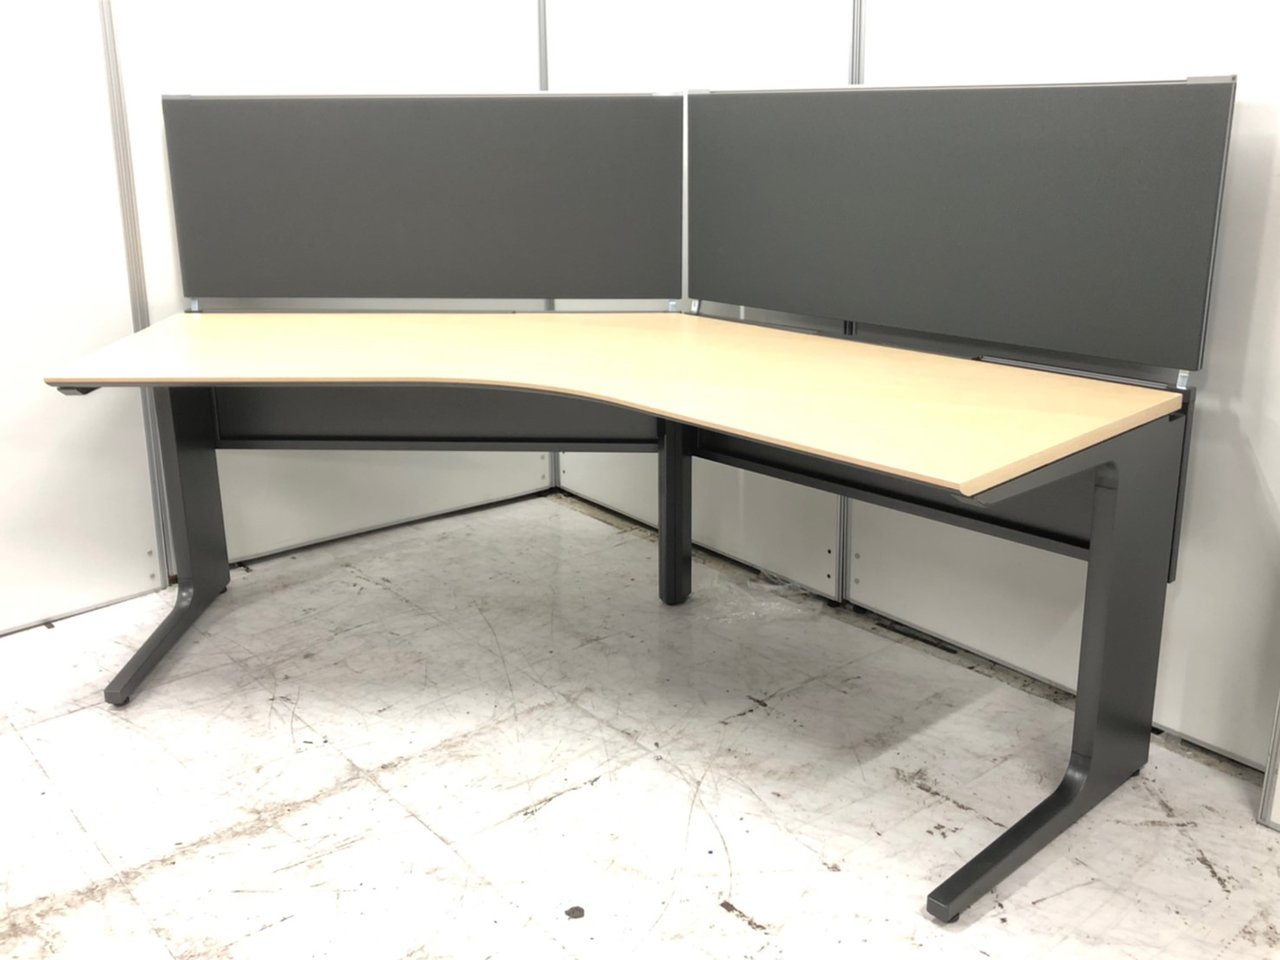 KOKUYO コクヨ   レヴィスト デスクシステム 独立テーブル 片面タイプ パネル脚タイプ 幅2800MM 本体色 S85 チャコールメタリック  天